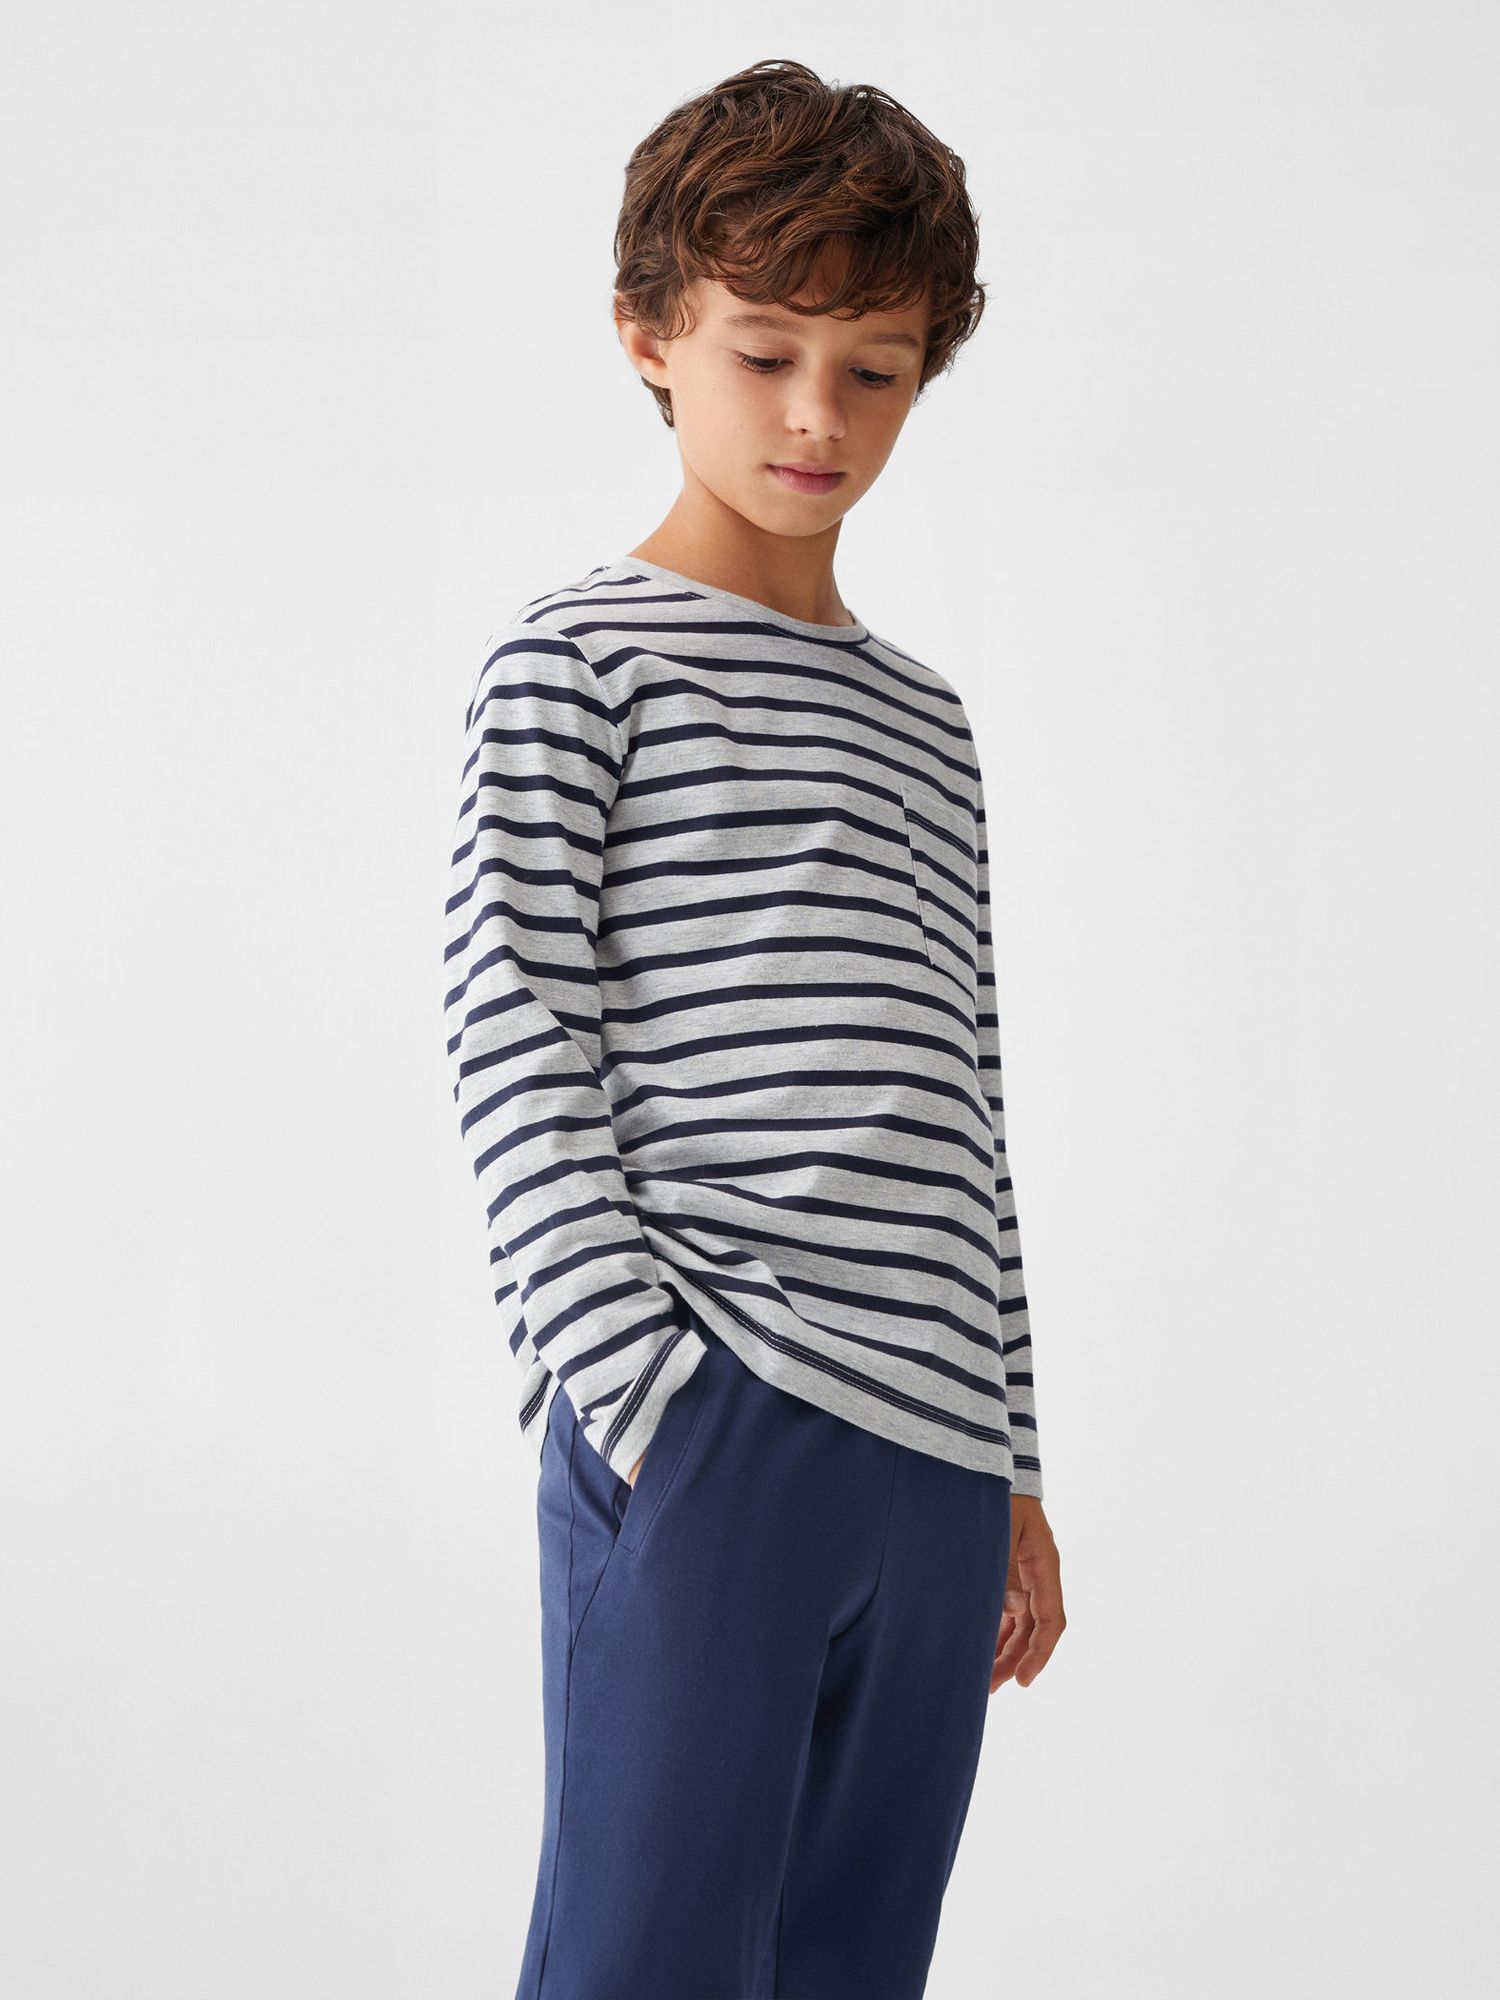 Mango Kids' Stripe Long Sleeve Pyjamas, Navy at John Lewis & Partners